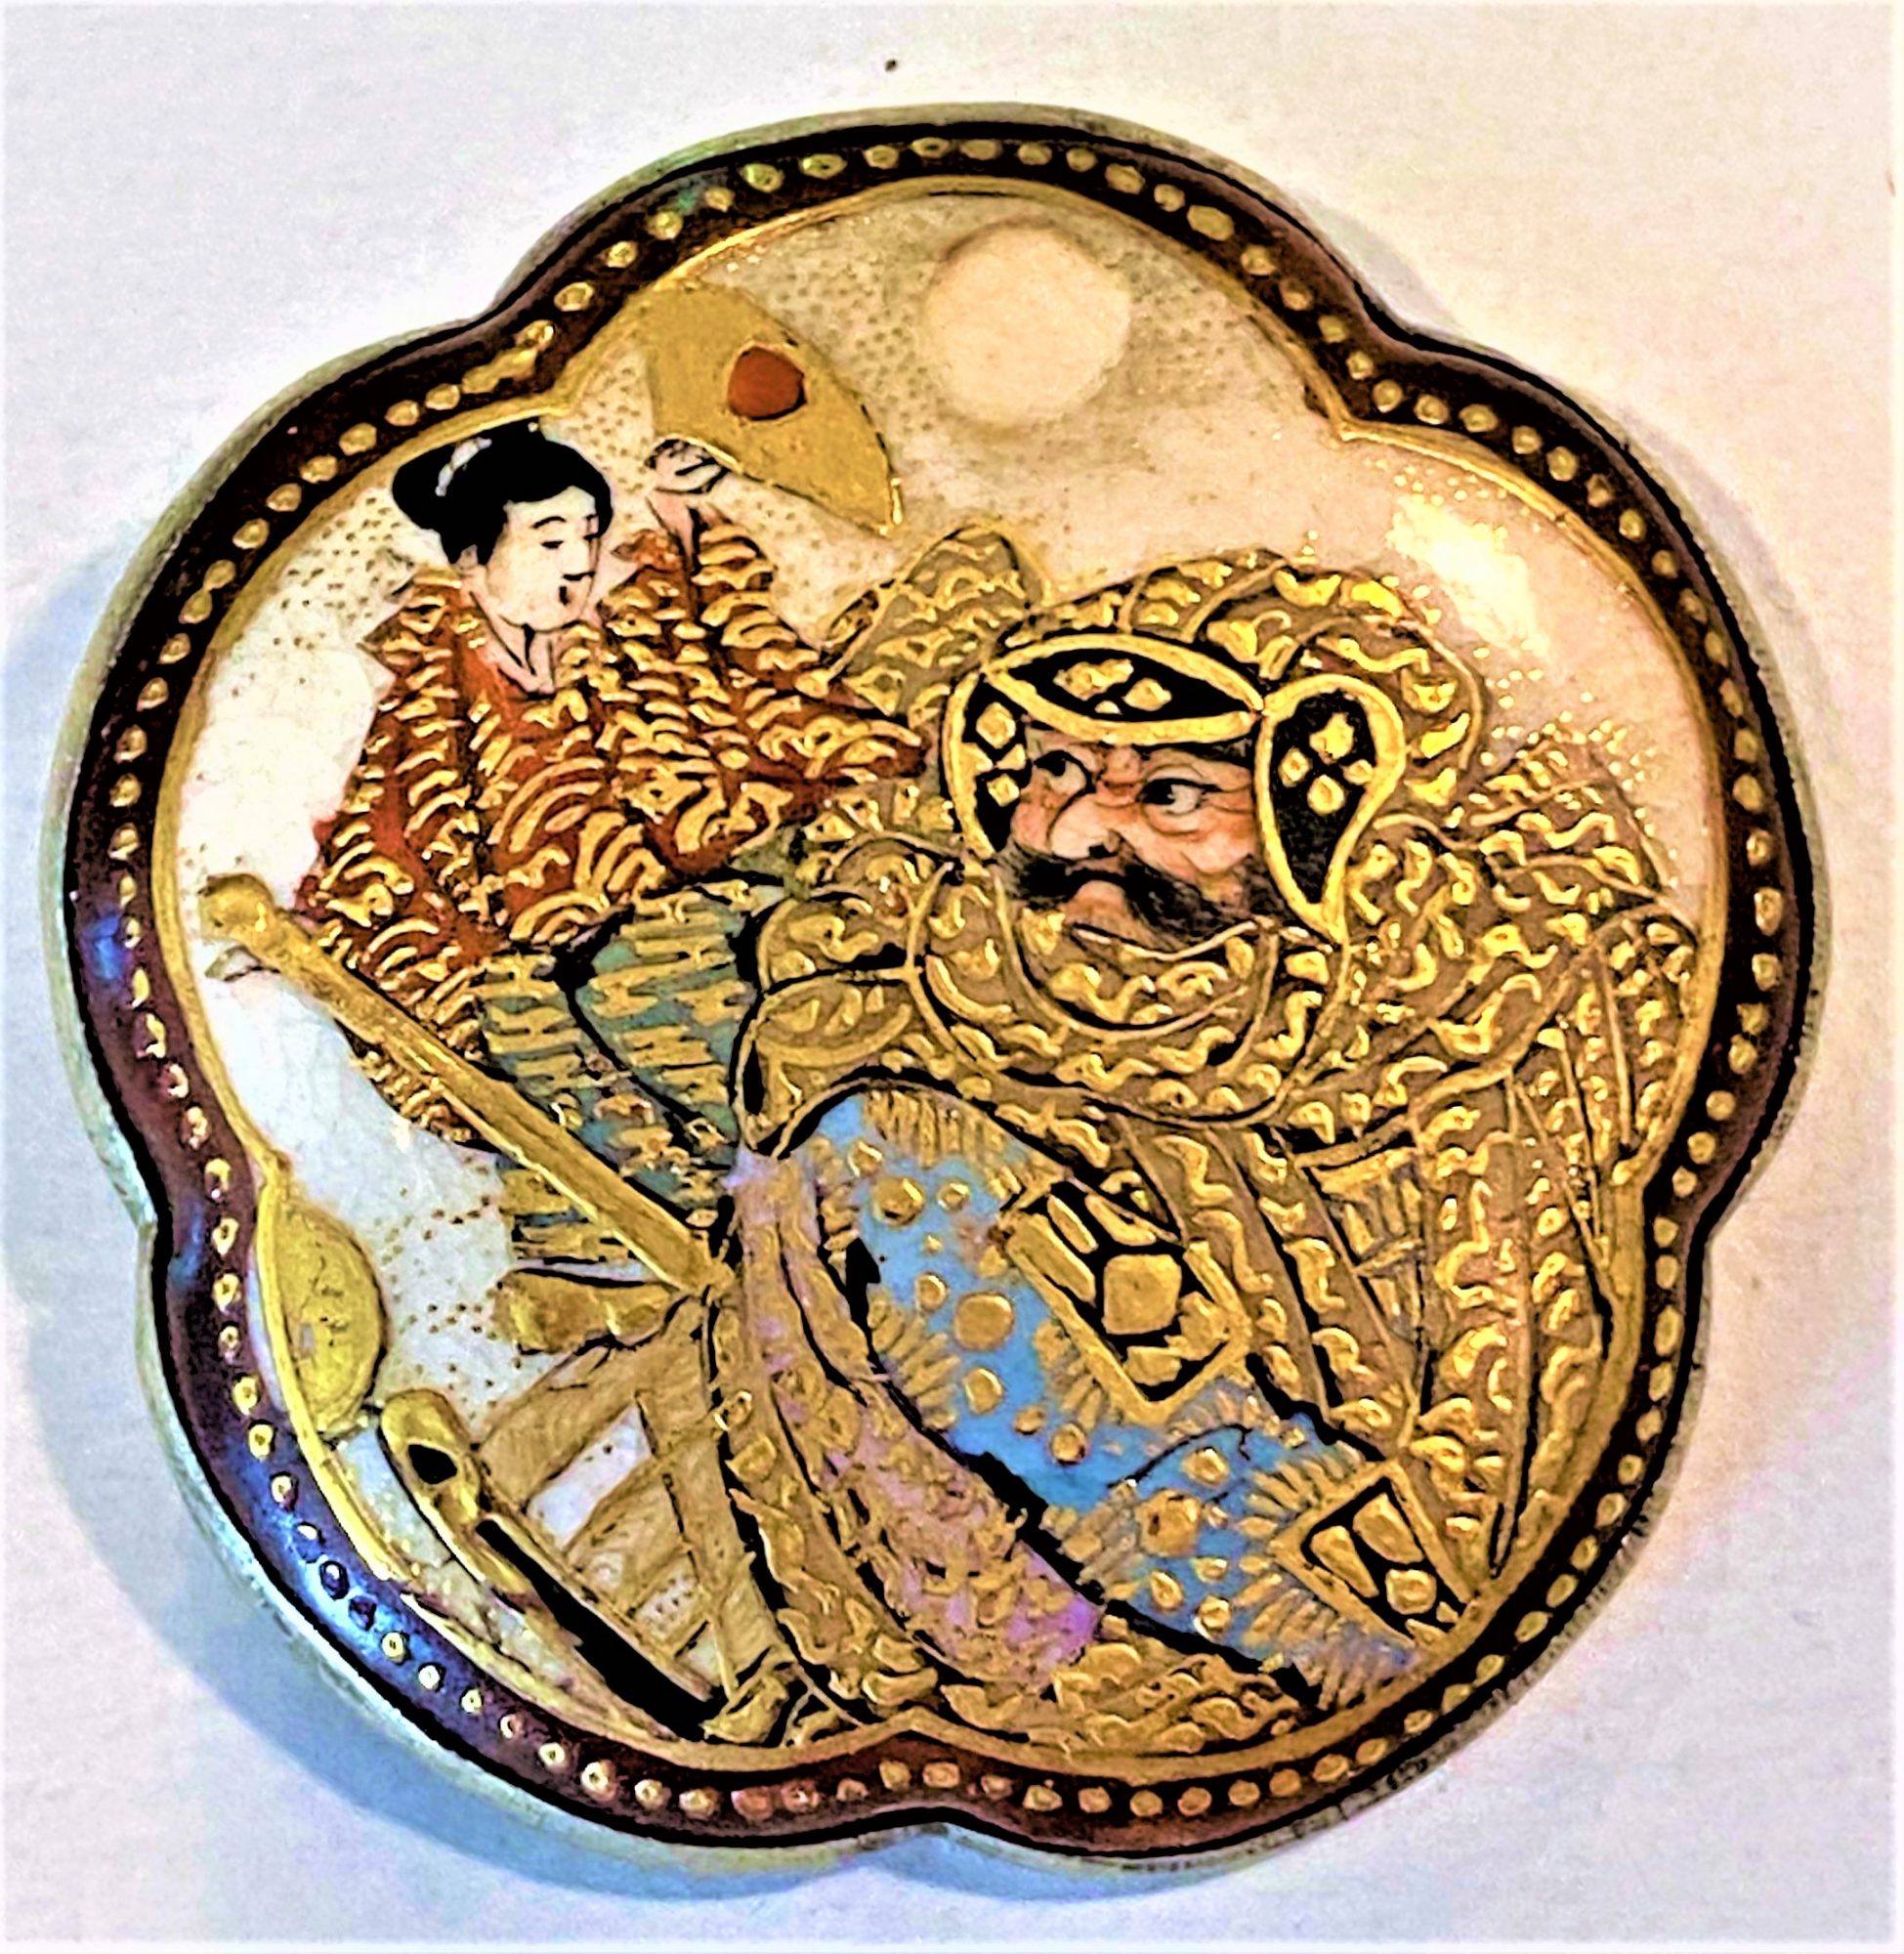 Rare large scalloped 19th century datsuma figural button